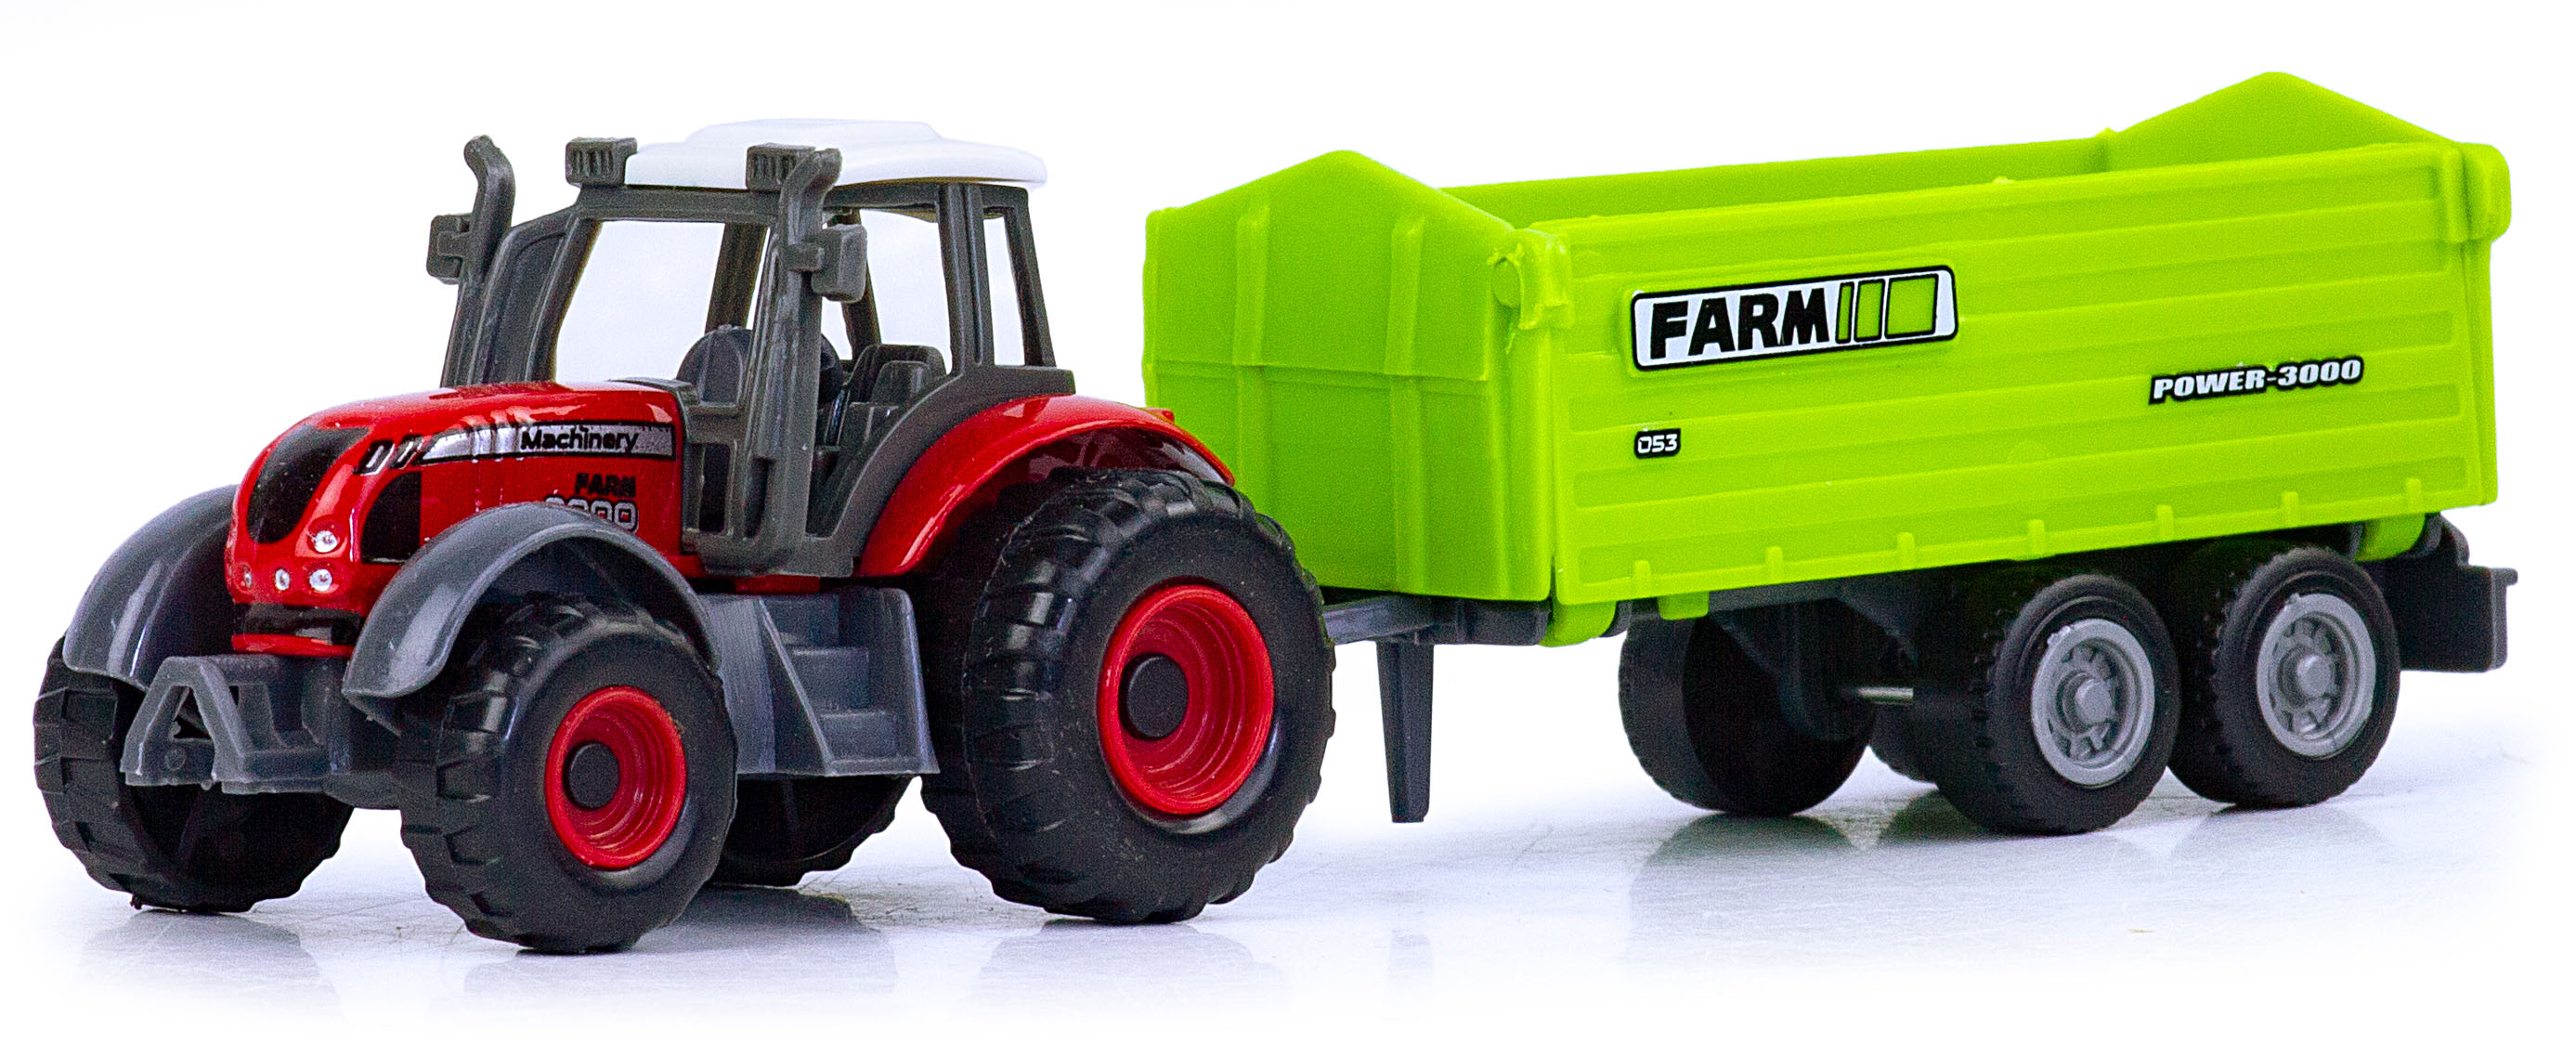 Машинка металлическая Farm Set «Трактор сельскохозяйственный с прицепом» SQ82002-1 / Красный